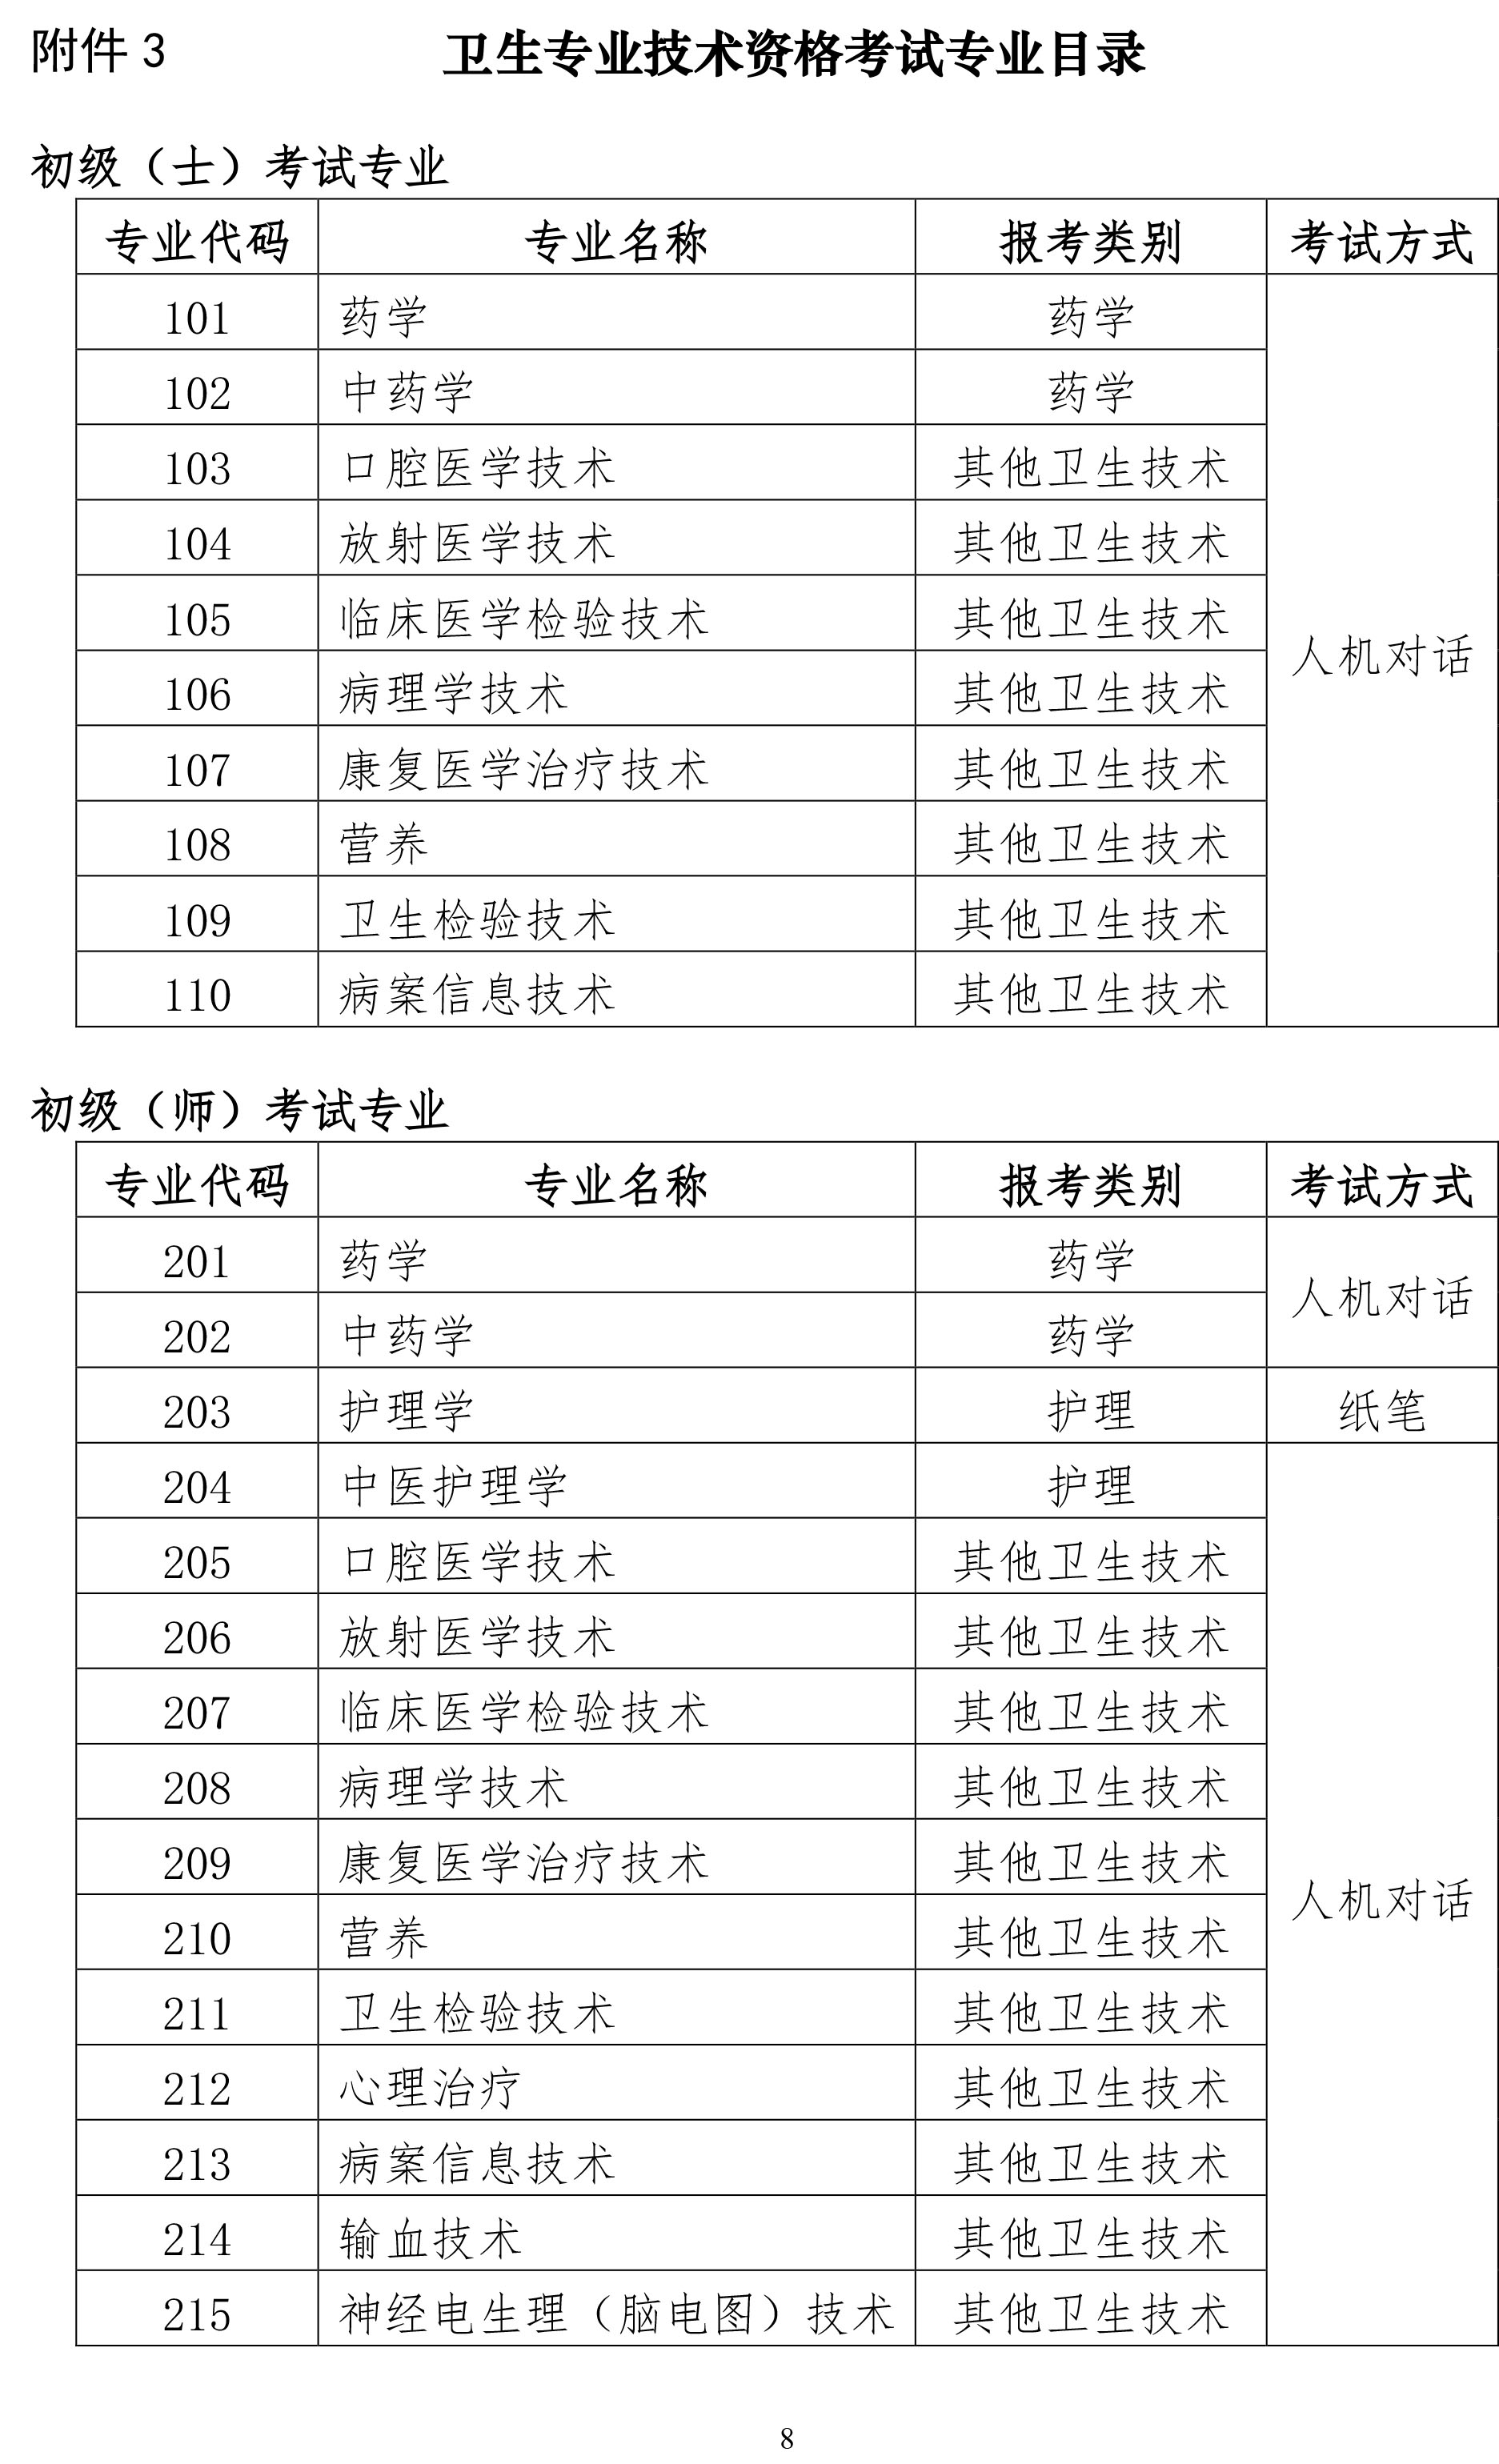 关于上海市2020年度全国卫生专业技术资格考试的通知